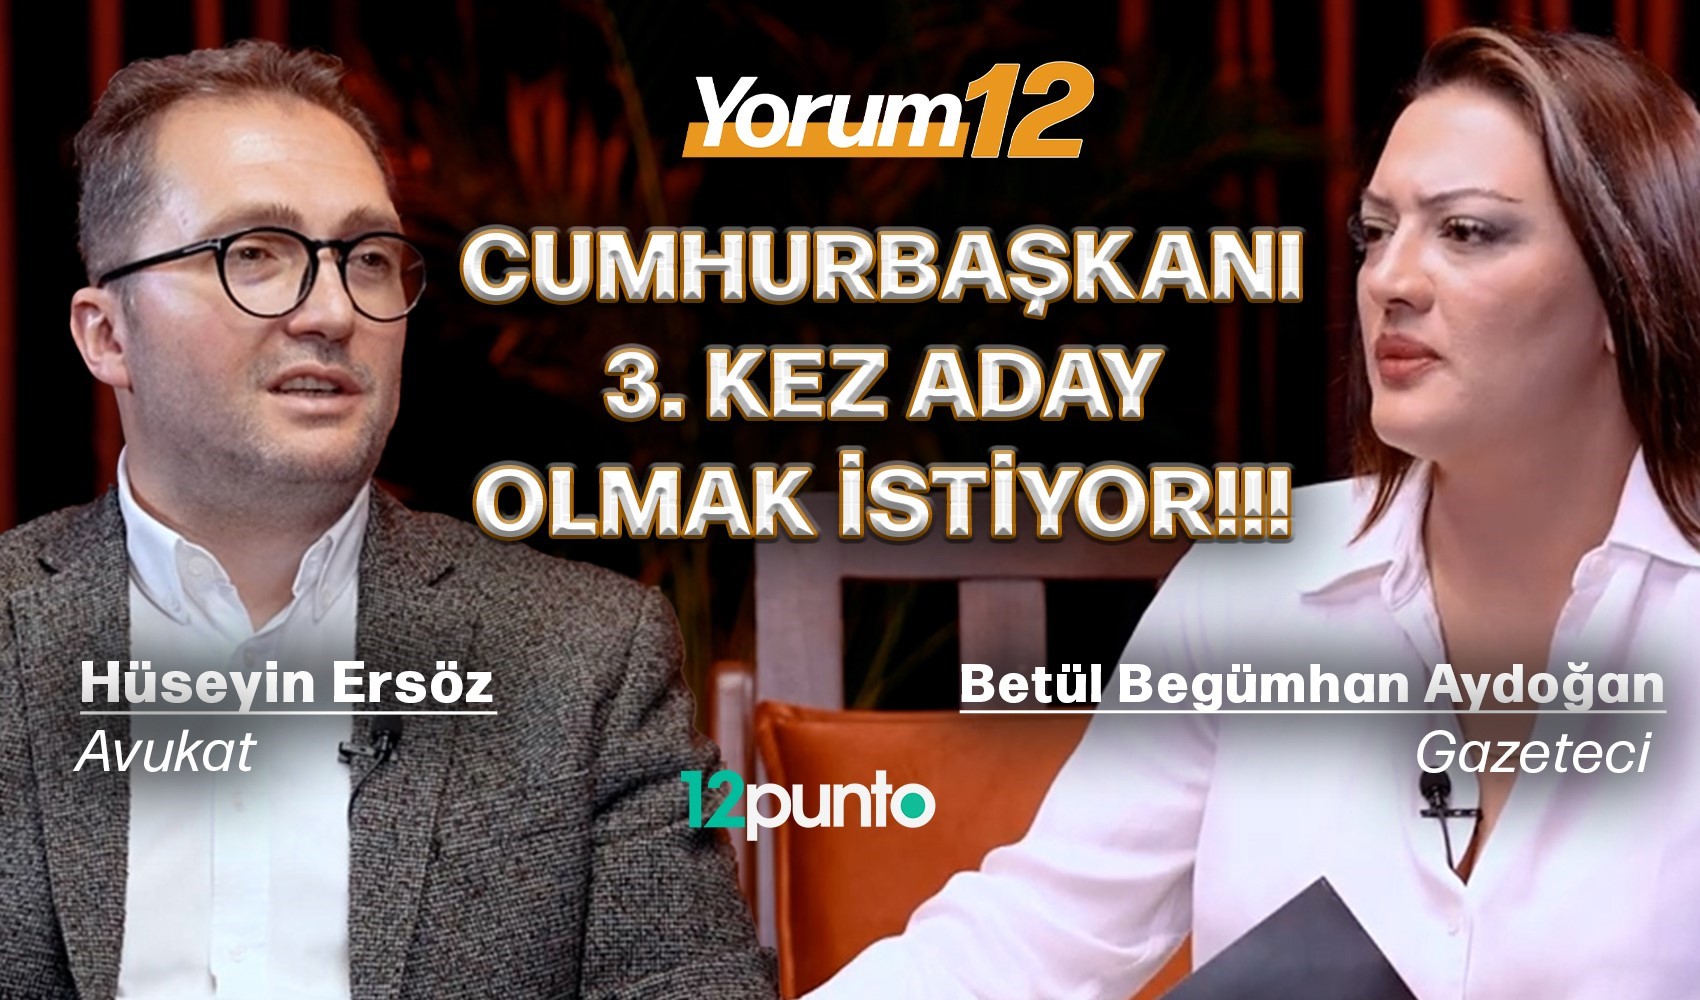 Avukat Hüseyin Ersöz Yorum12'de konuştu: 'Cumhurbaşkanı 3. kez aday olmak istiyor'